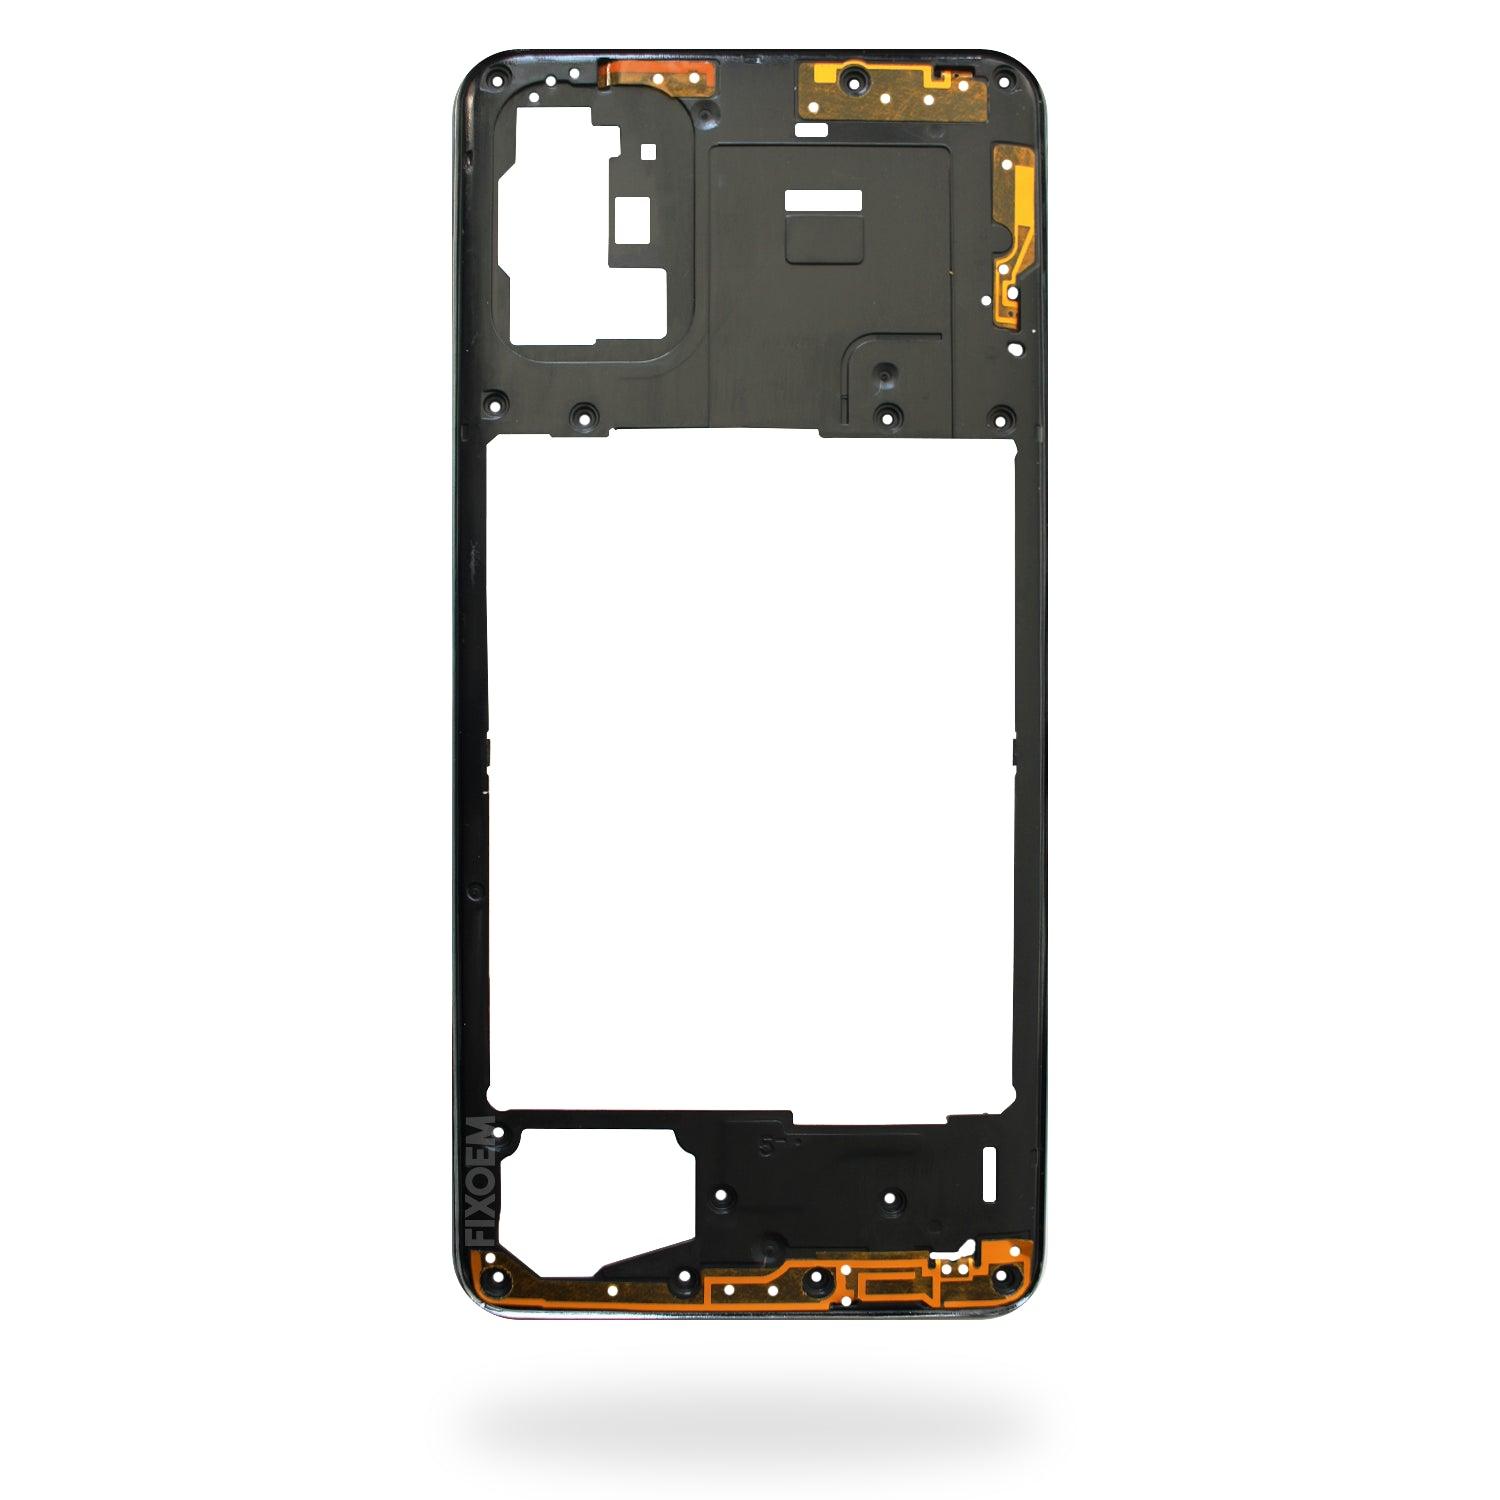 Marco Samsung A71 A715F a solo $ 80.00 Refaccion y puestos celulares, refurbish y microelectronica.- FixOEM